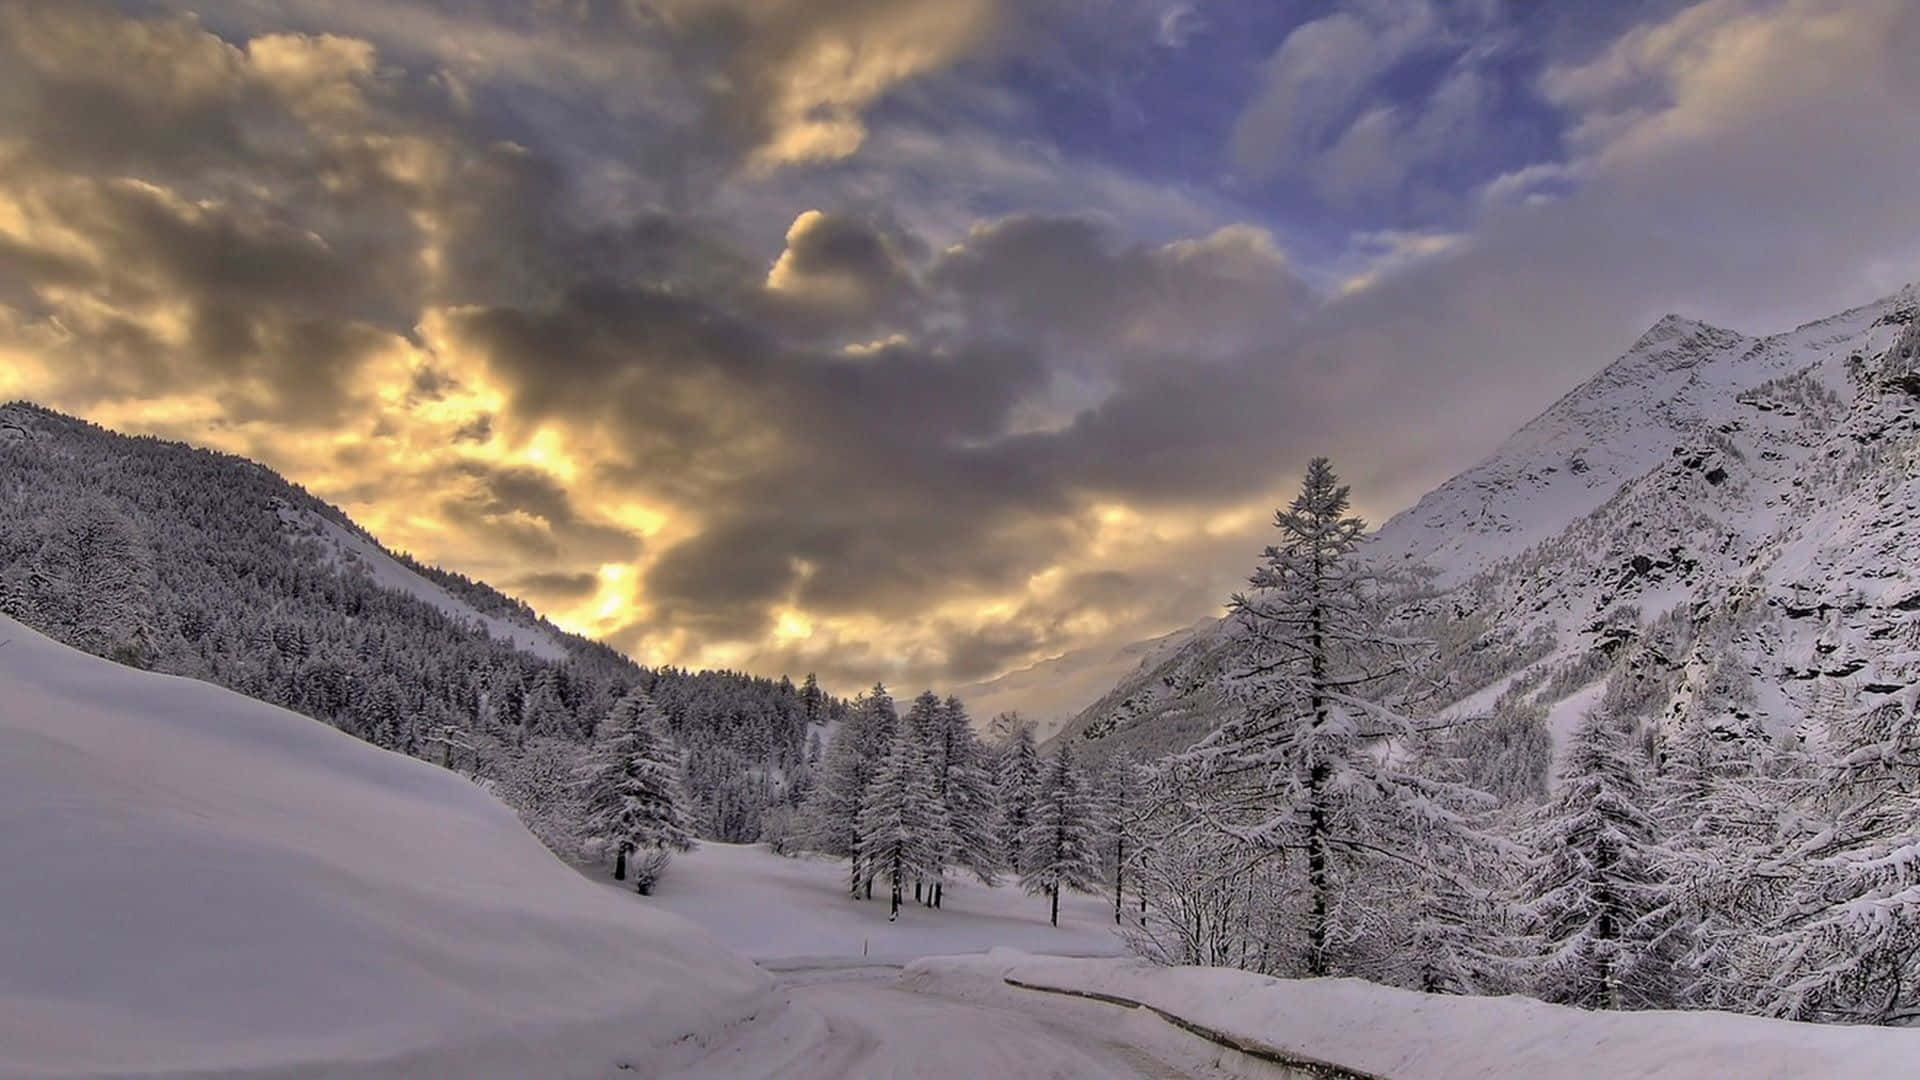 A breathtaking snowstorm in a serene winter landscape Wallpaper